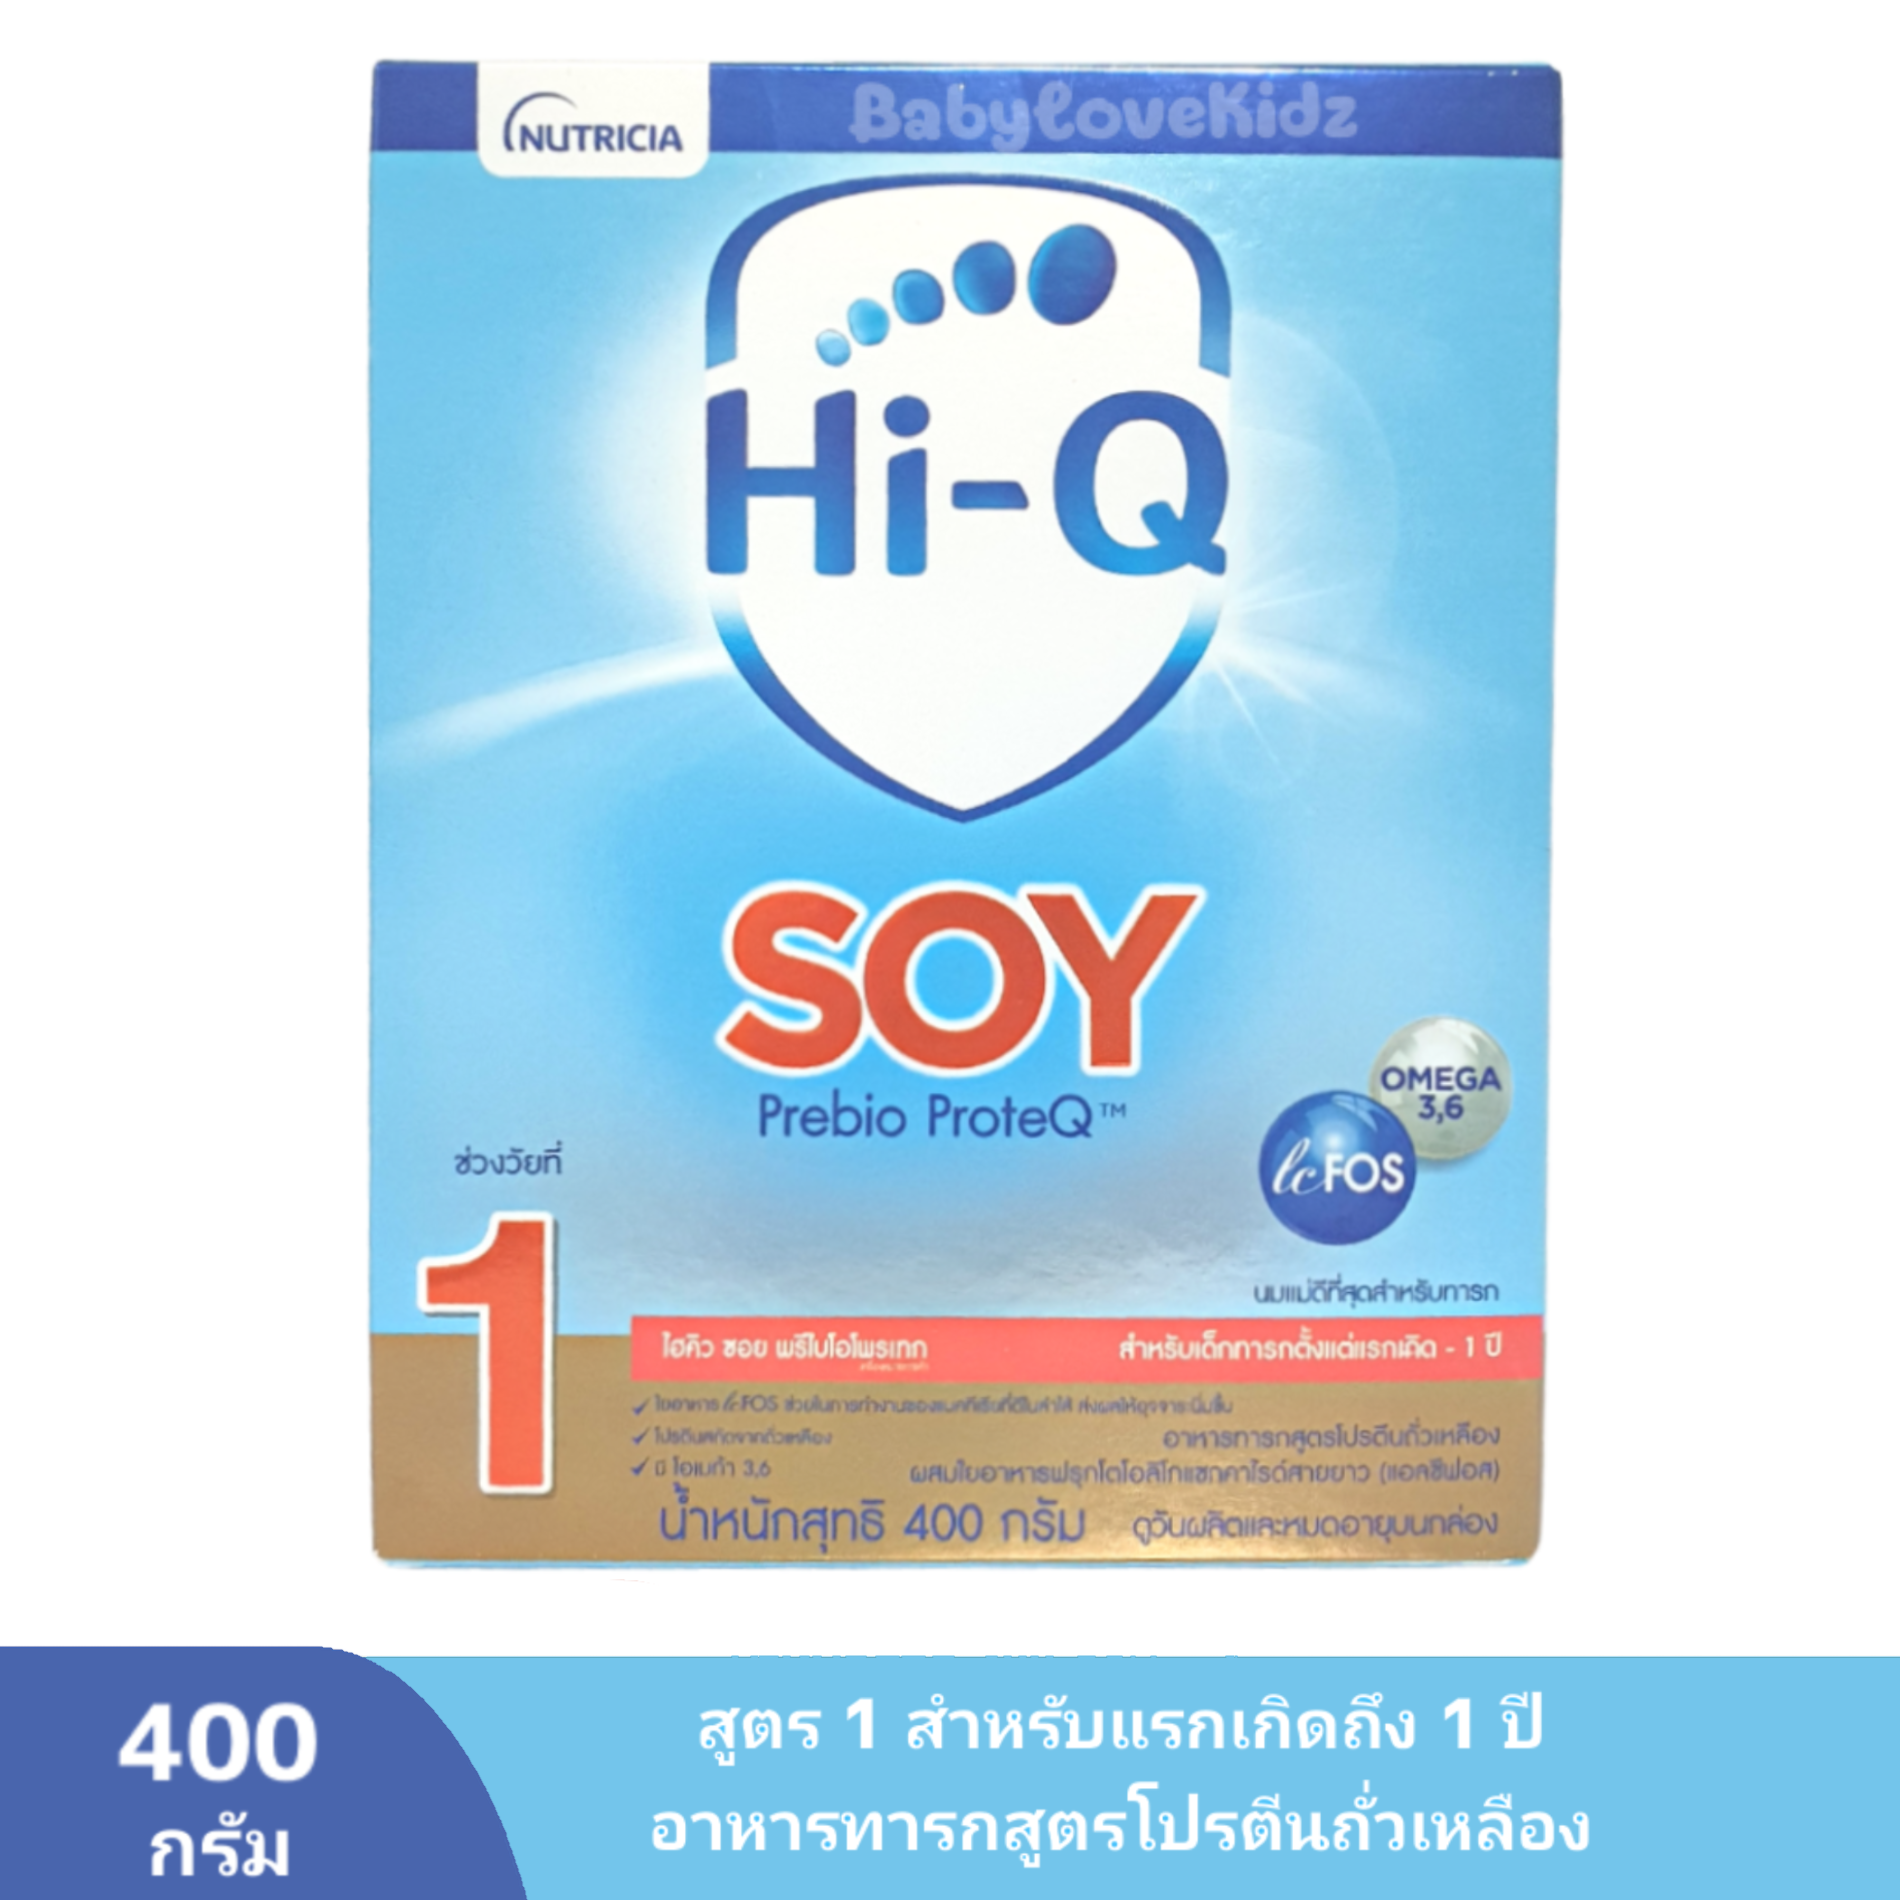 มุมมองเพิ่มเติมของสินค้า ส่งฟรี - นมผง Hi q soy ไฮคิวซอย พรีไบโอโพรเทก สูตร 1 Hi-Q Soy Prebio ProteQ ขนาด 400 กรัม Hi q soy 1